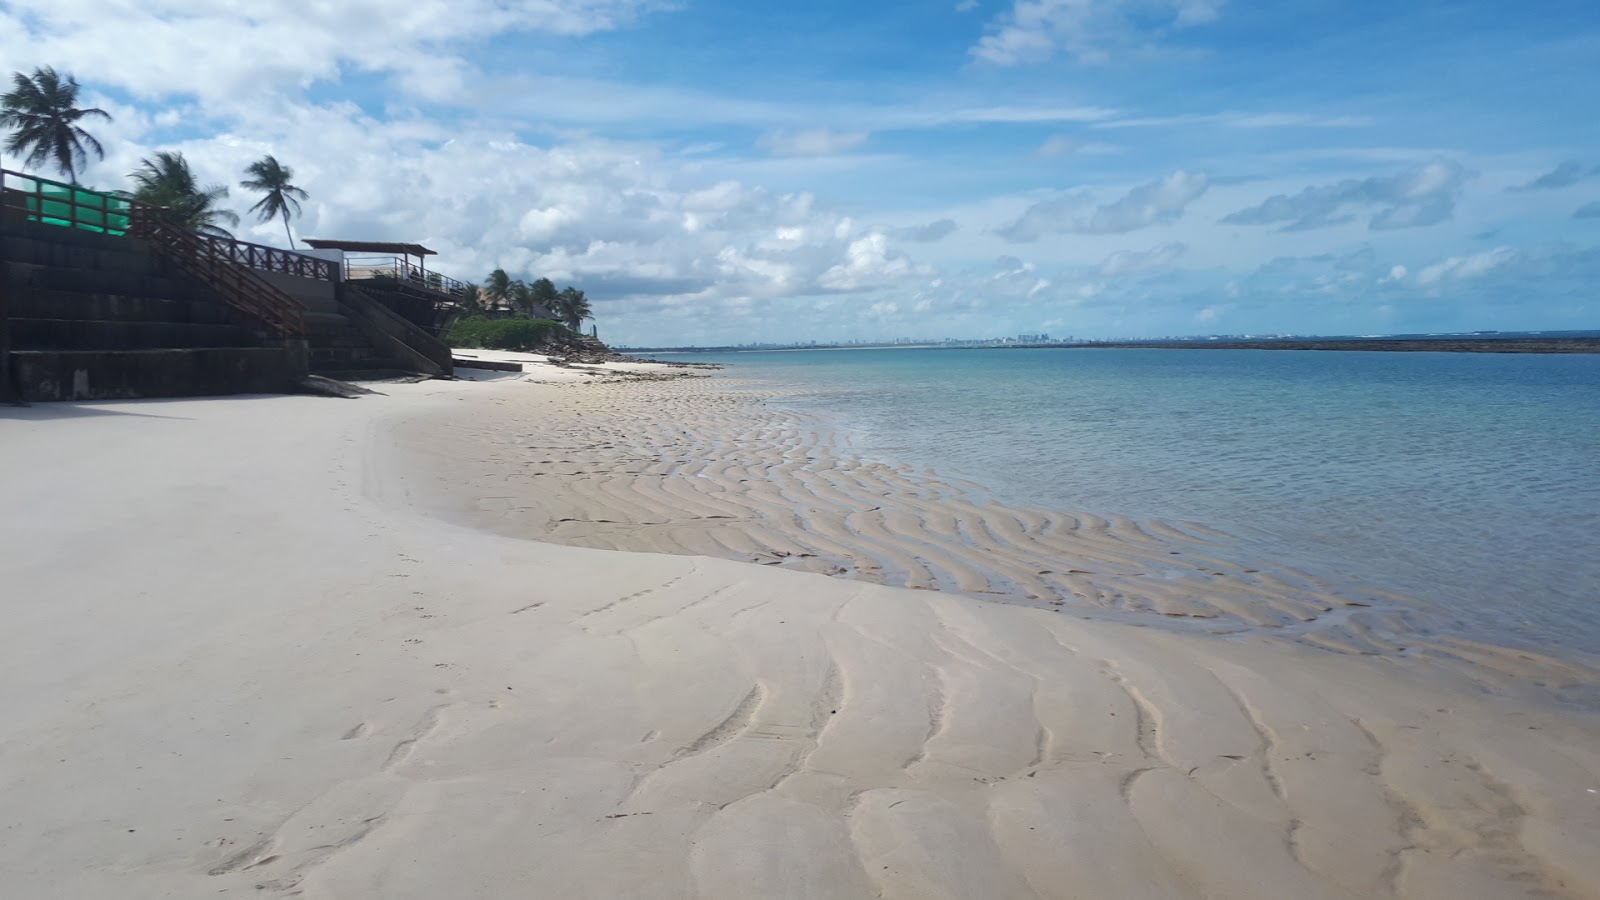 Fotografie cu Praia do Saco - locul popular printre cunoscătorii de relaxare